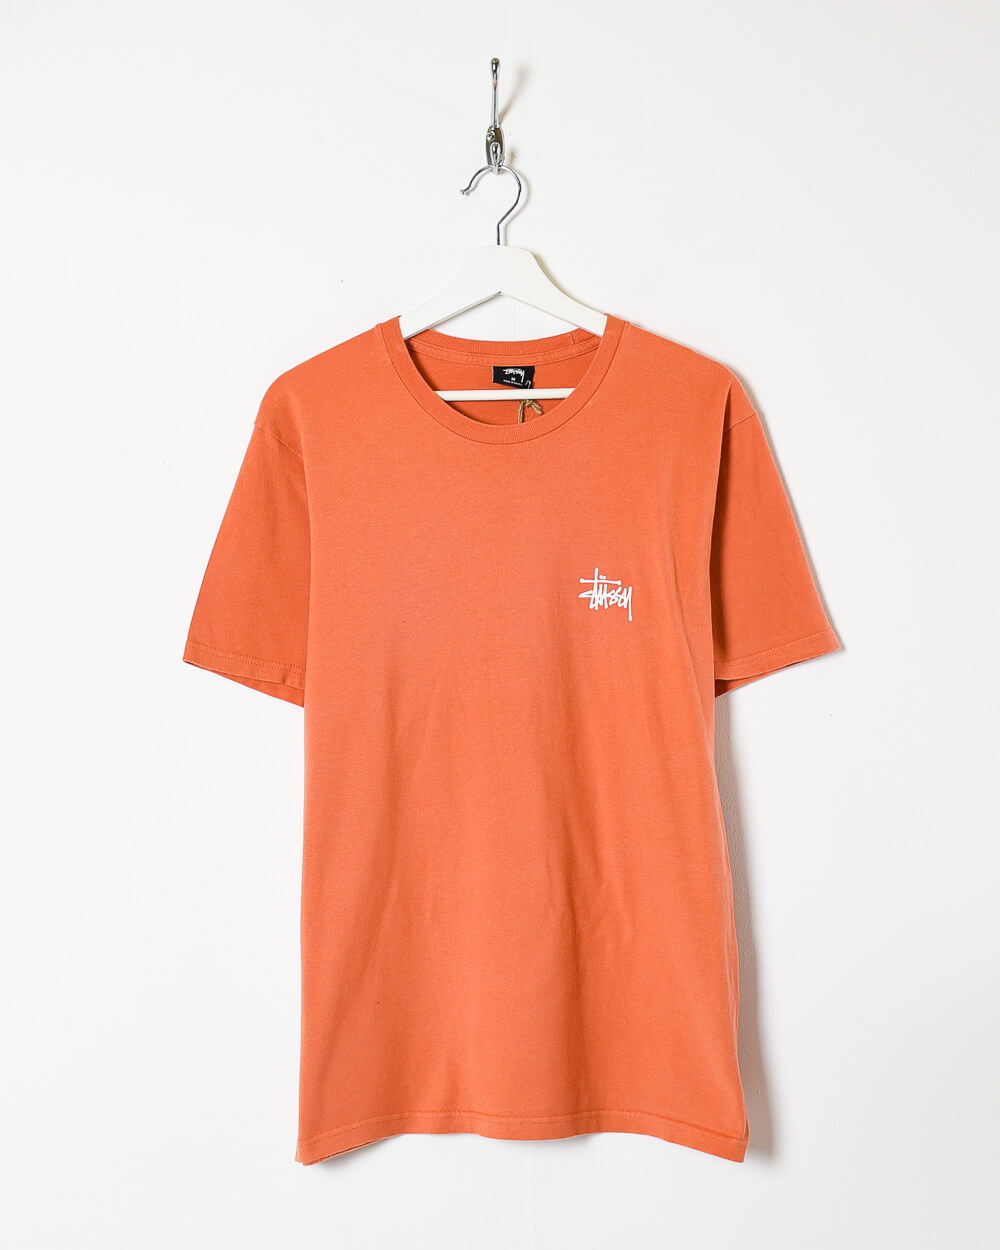 Orange Stussy T-Shirt - Medium